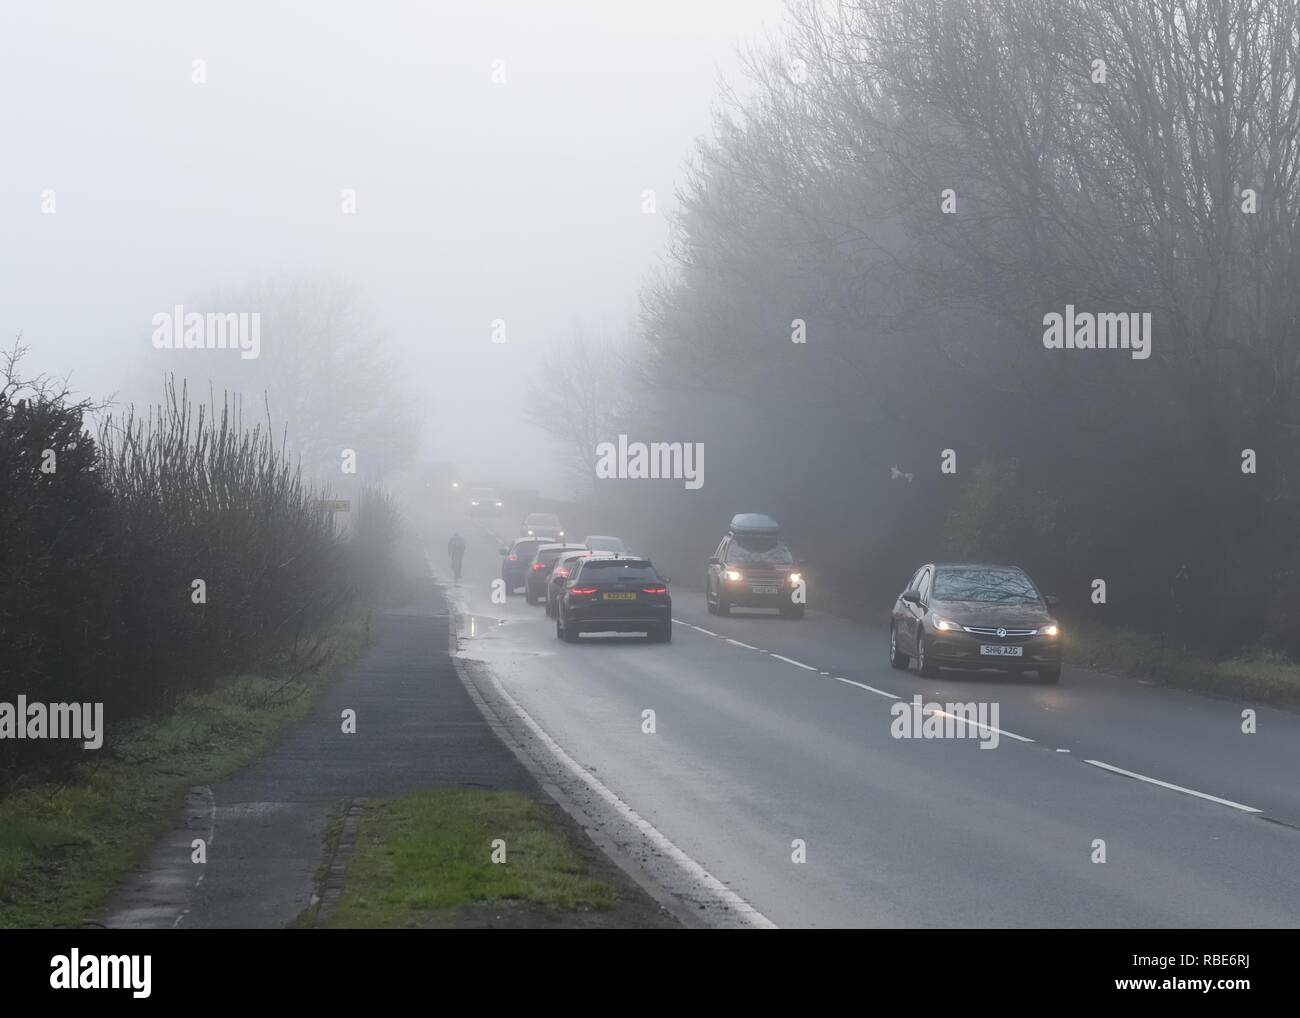 Un cycliste sans lumières presque disparaître dans le brouillard sur une route très fréquentée près de Glasgow en Ecosse, Royaume-Uni, l'Europe. Banque D'Images